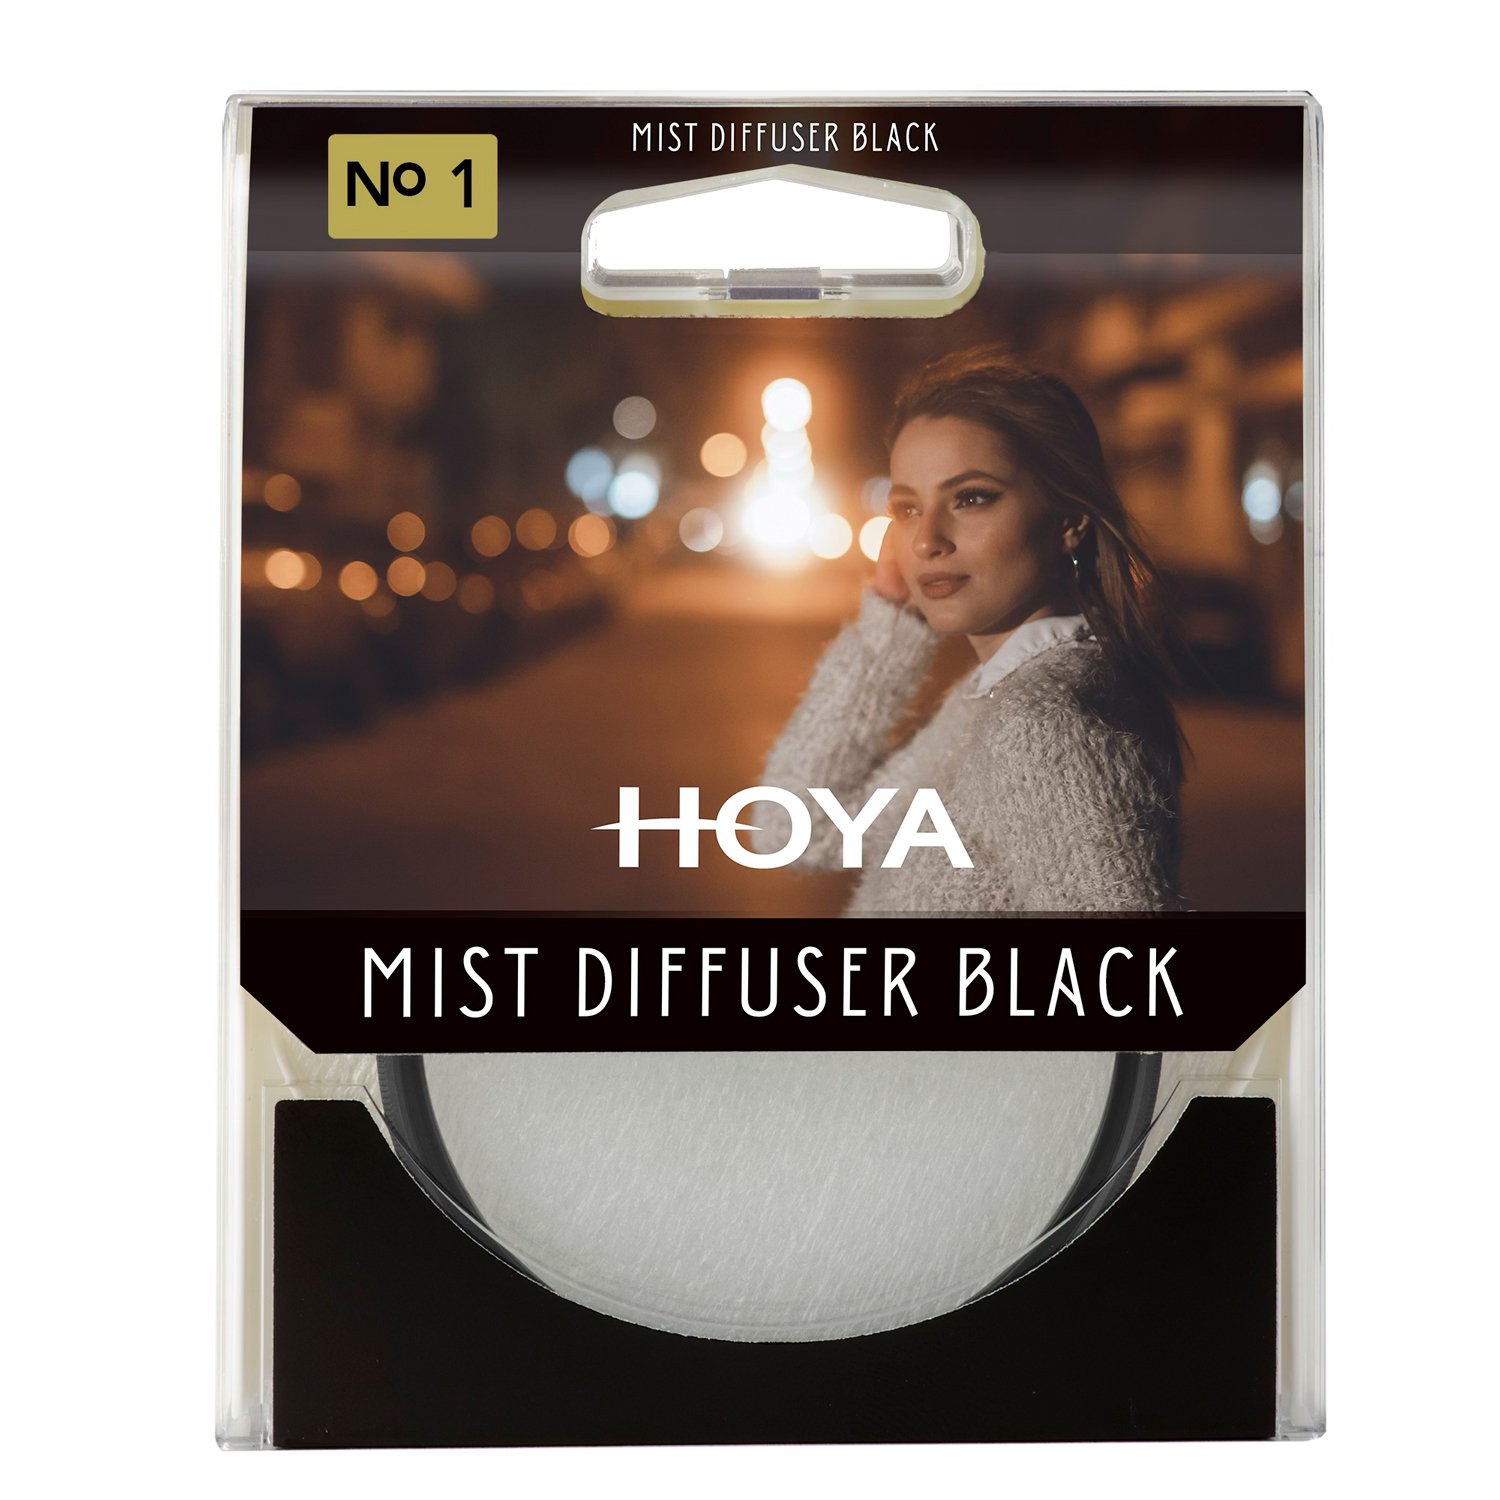 Mist Diffuser Black No. 1 filter